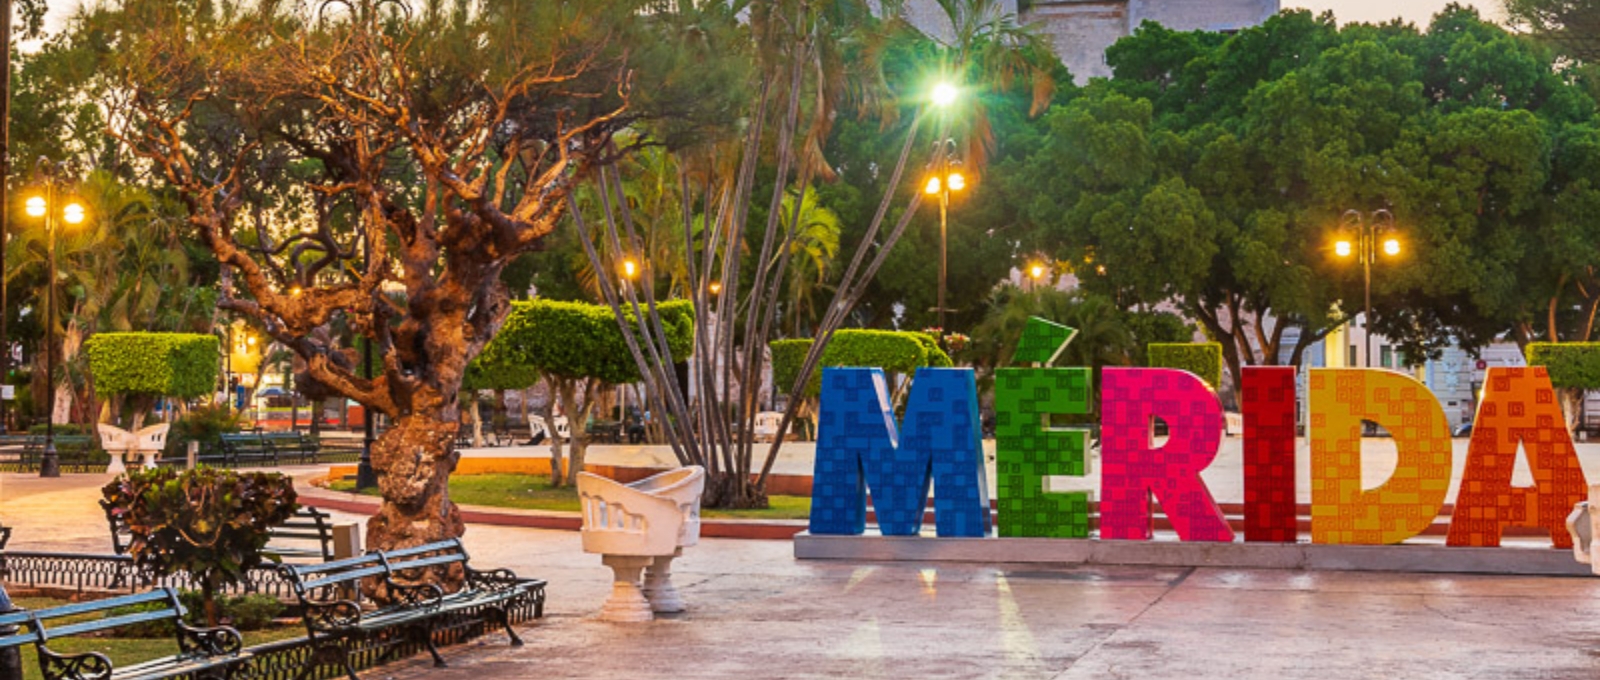 Mérida, la ciudad de la Península de Yucatán con mejor desarrollo sostenible